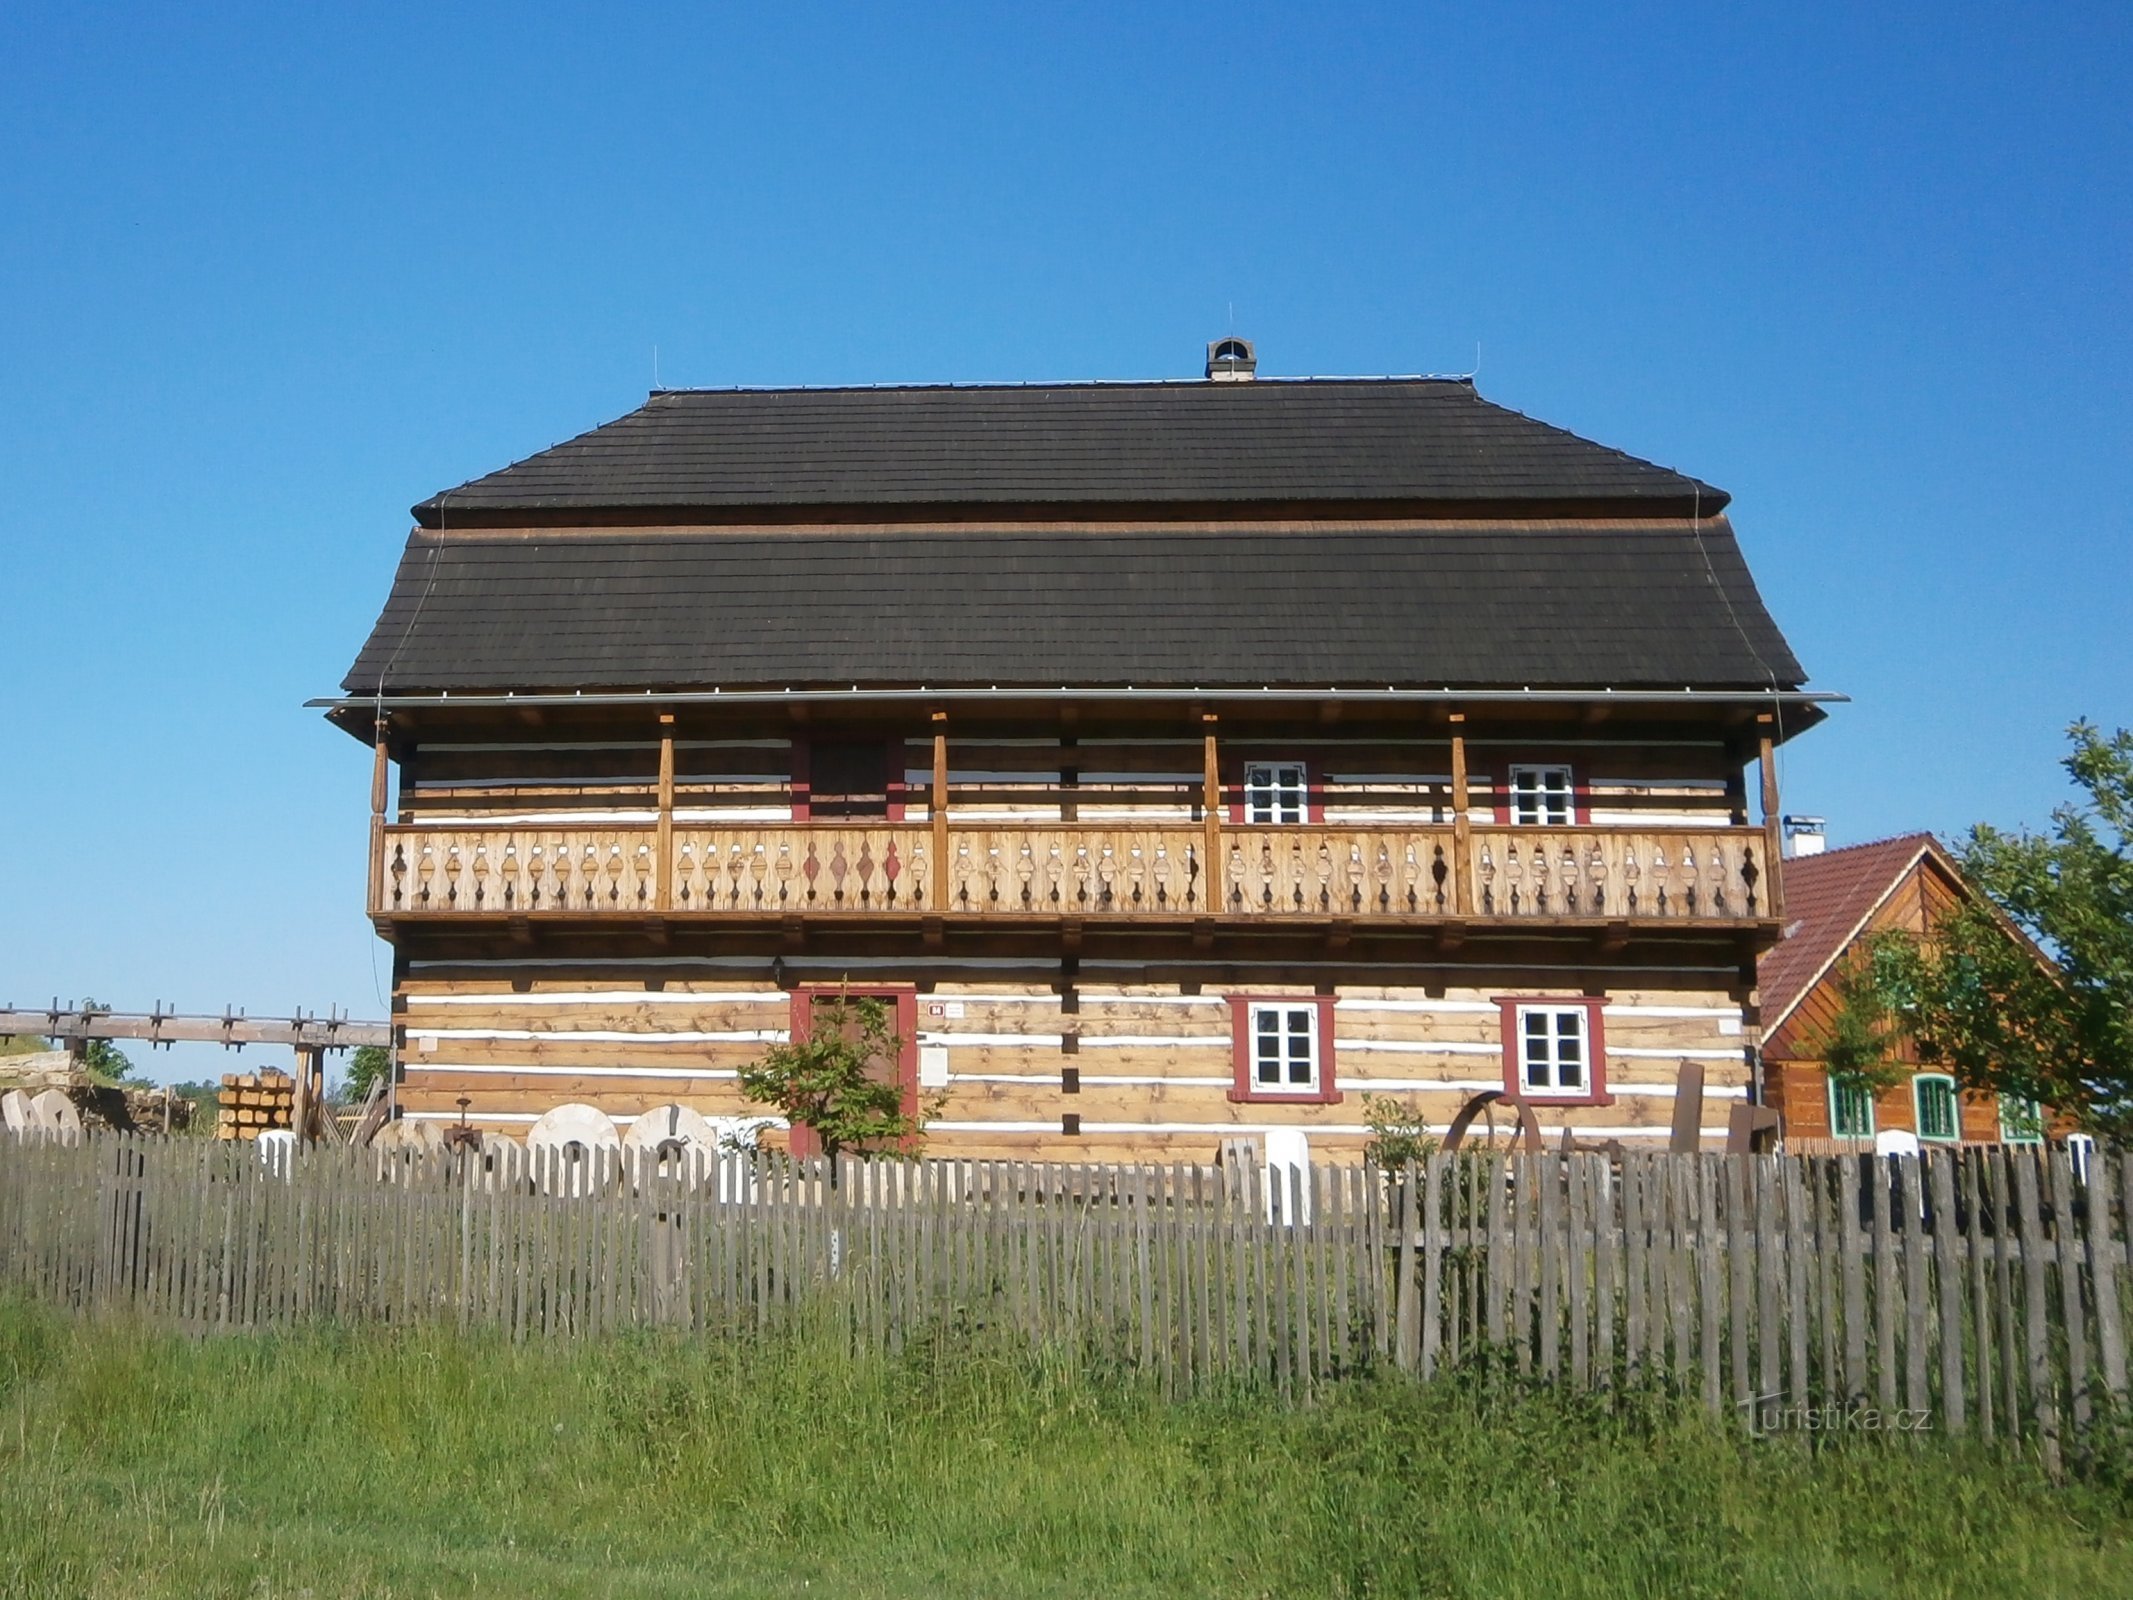 Bản sao của nhà máy Béleč trong bảo tàng ngoài trời Krňovick (ngày 27.5.2017 tháng XNUMX năm XNUMX)